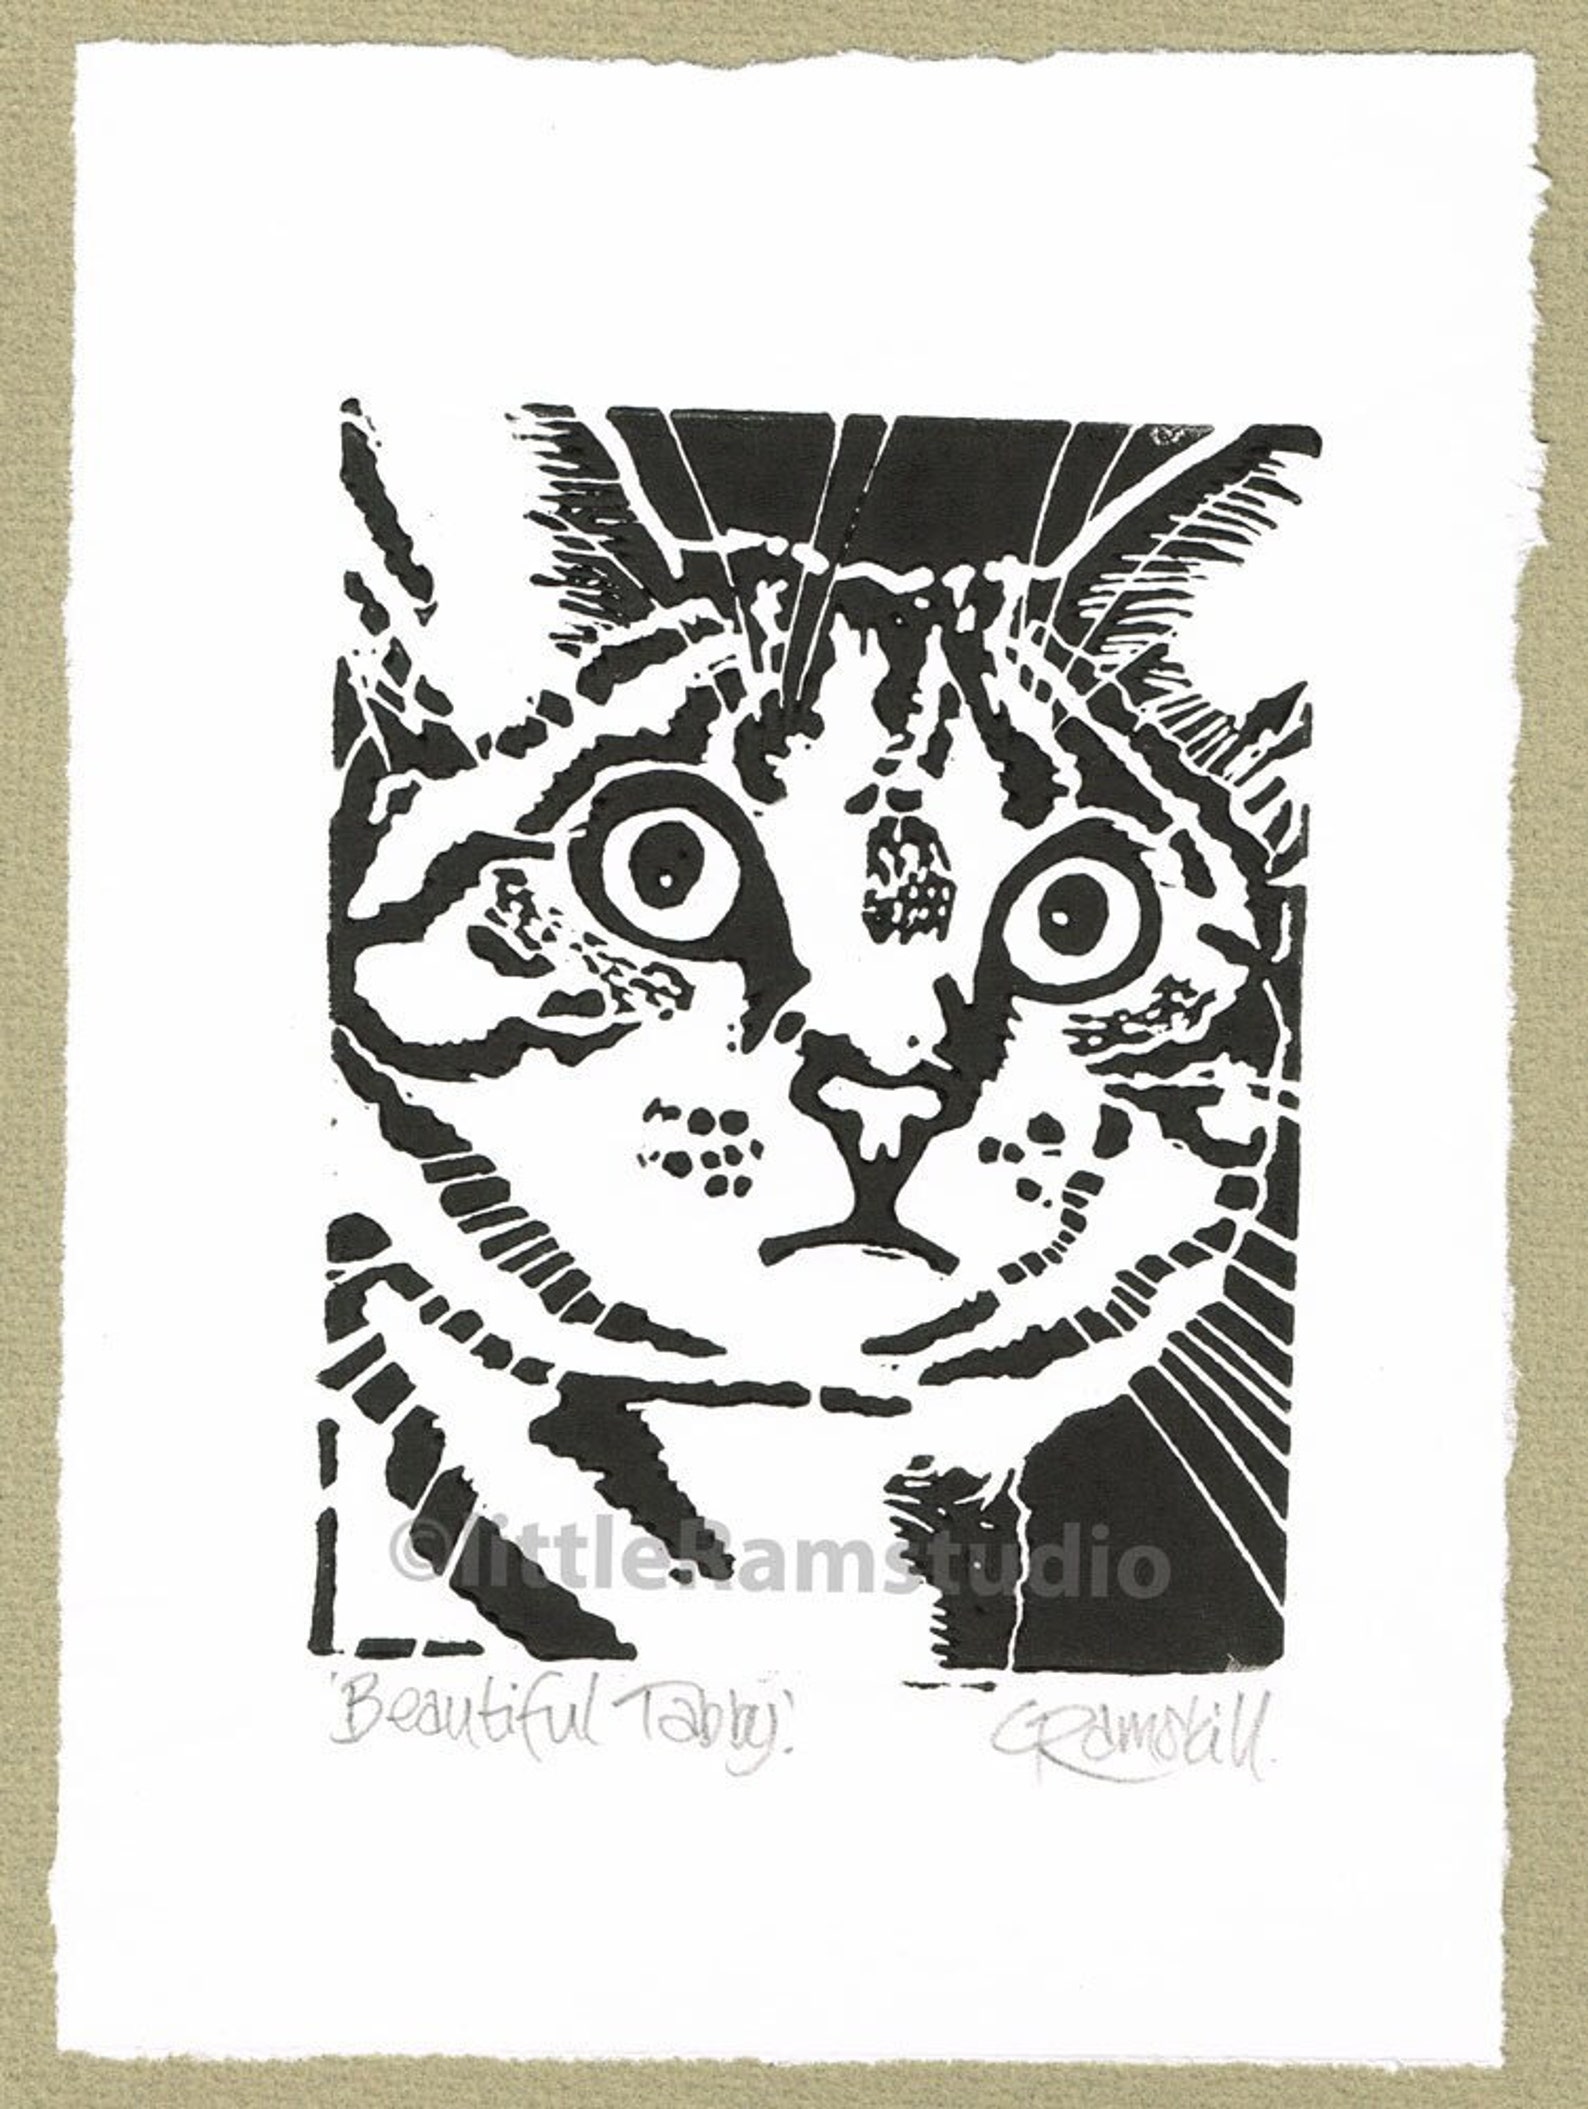 Beautiful Tabby Cat Art Linoprint Linocut Original Hand - Etsy